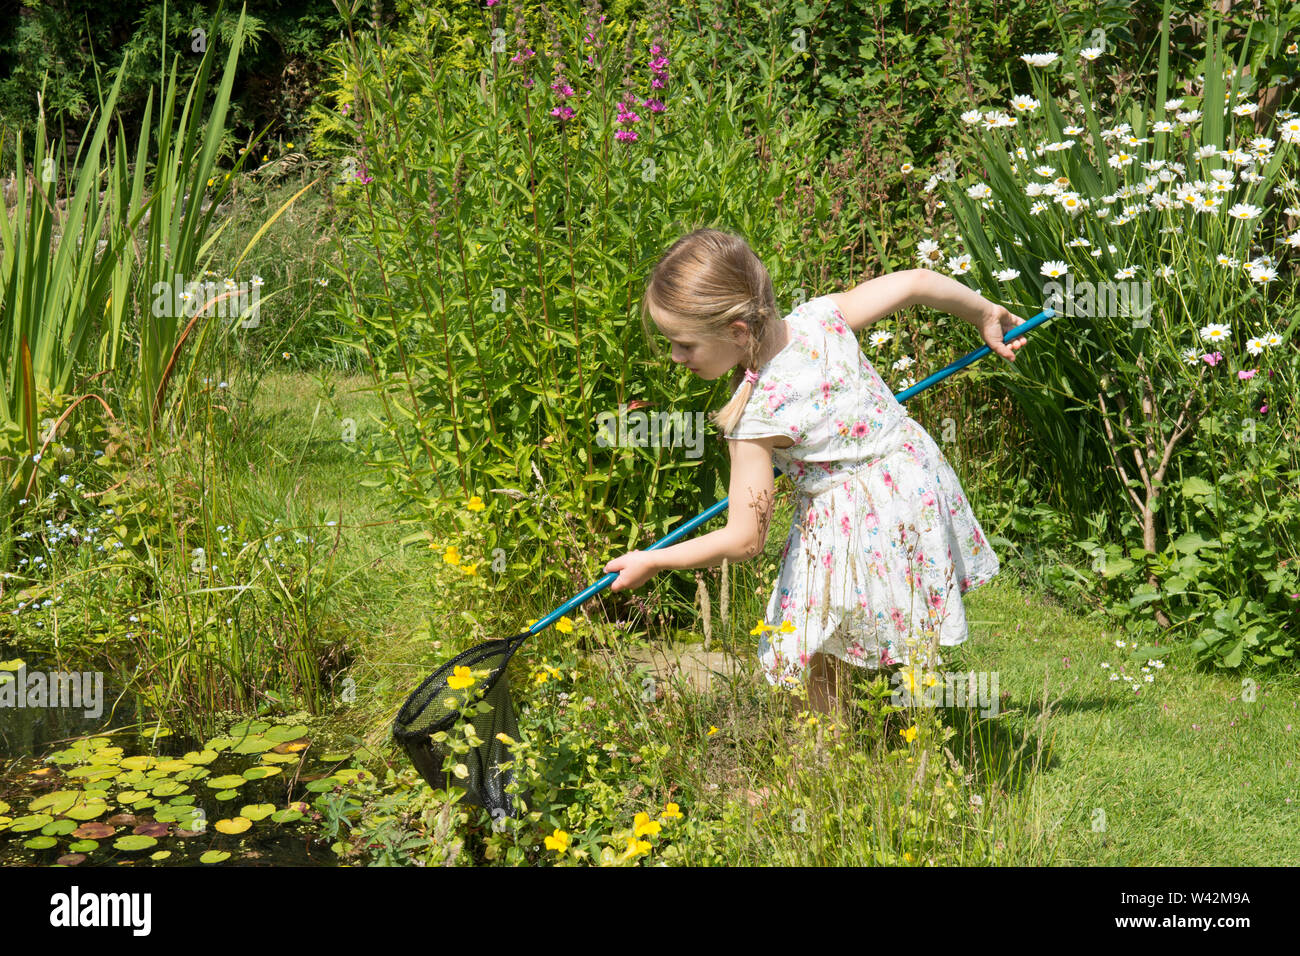 Junge Mädchen in der hübschen Kleid, drei Jahre alt, Teich tauchen, fang Teich leben, Kaulquappen, libellelarven im Netz, Garten Tiere Teich, Großbritannien, Juli Stockfoto